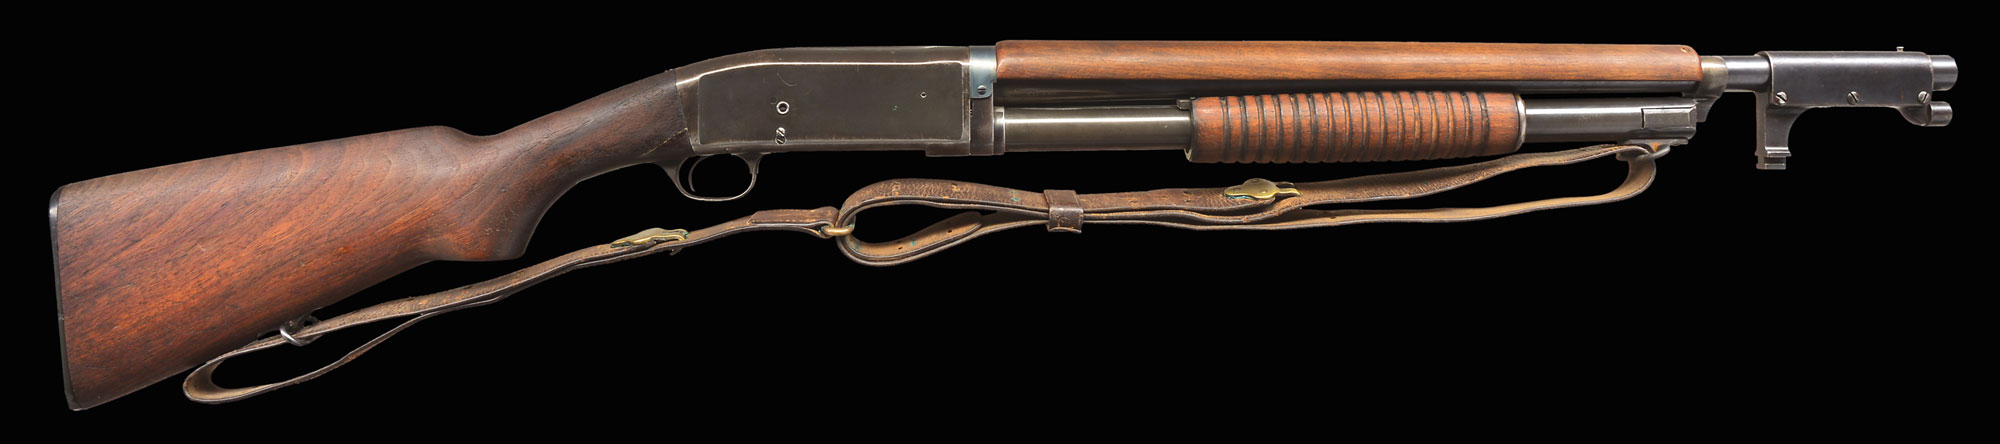 remington 22 pump rifle parts